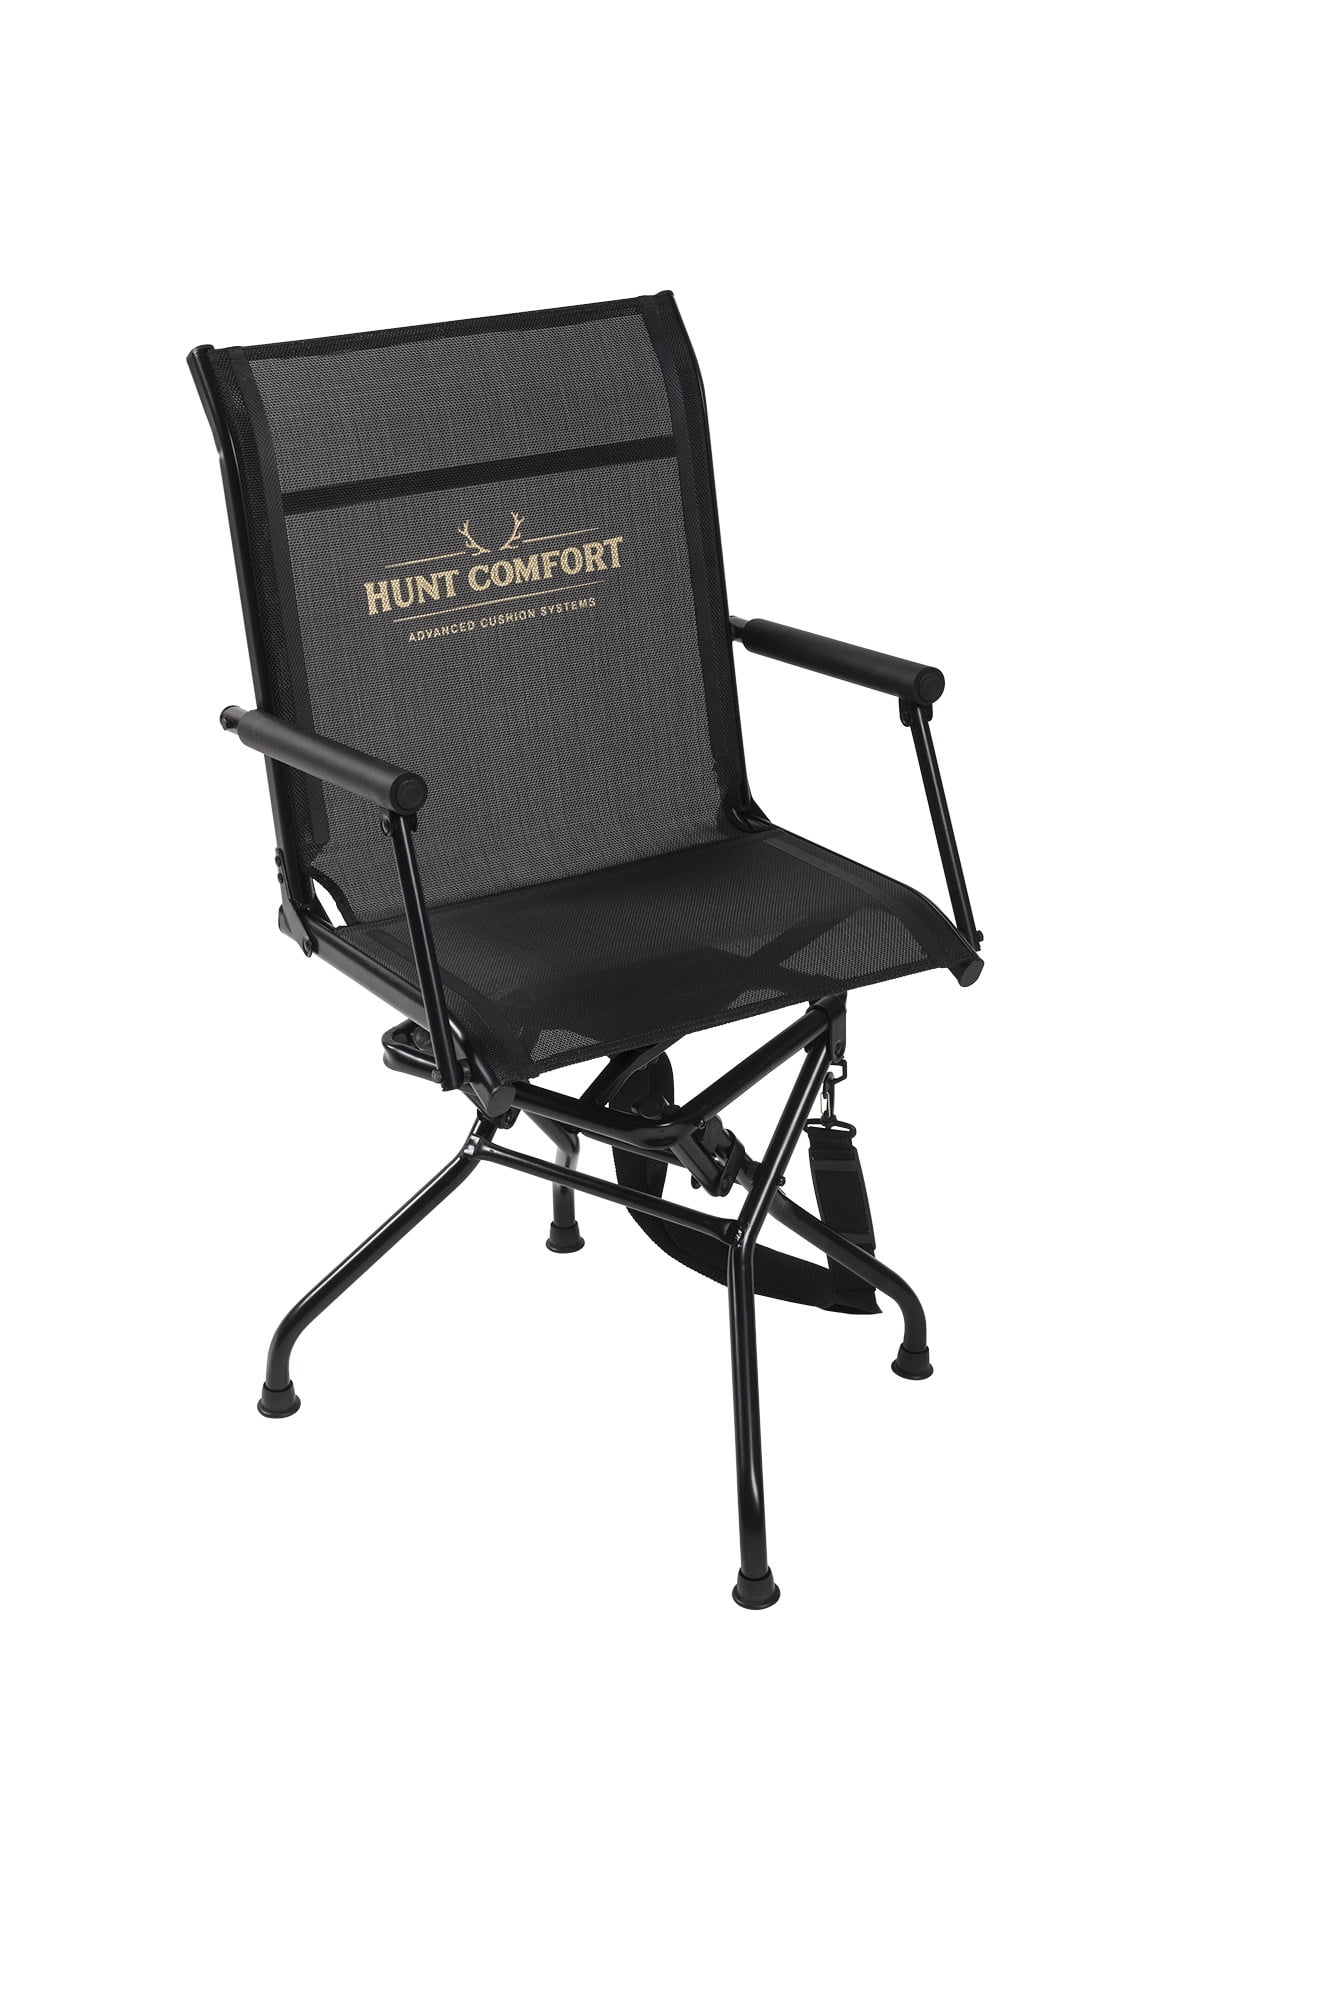 Hunting Swivel Chair Black Padded Back 360 Degree Folding Portable Deer Hunt 